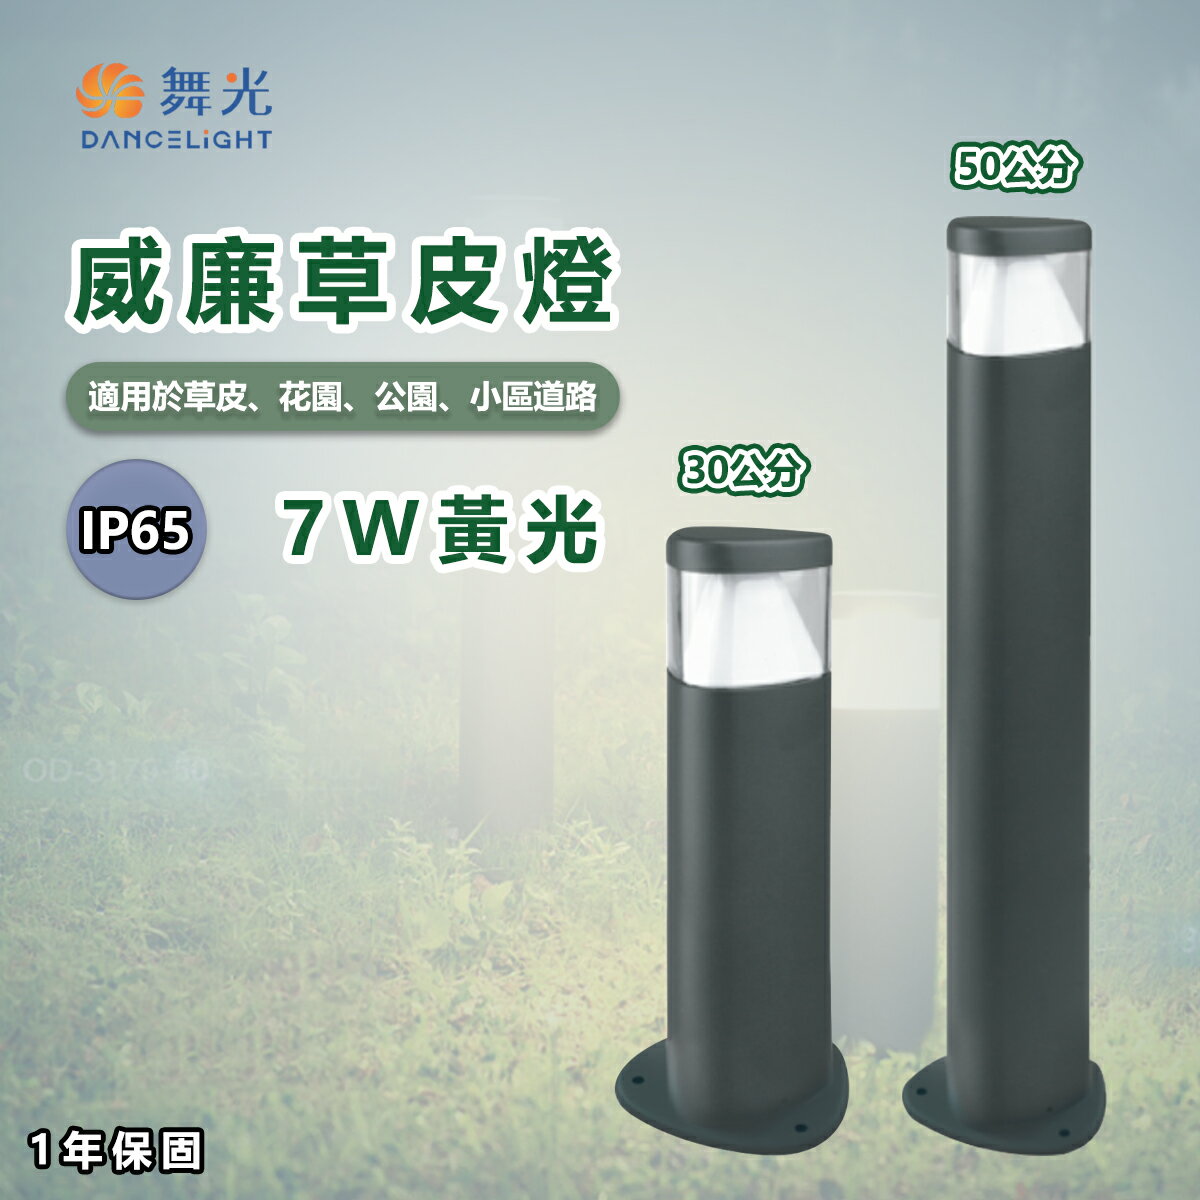 舞光★ LED 威廉 草皮燈 30cm/50cm 適用於草皮、花圃 流線外型 簡約